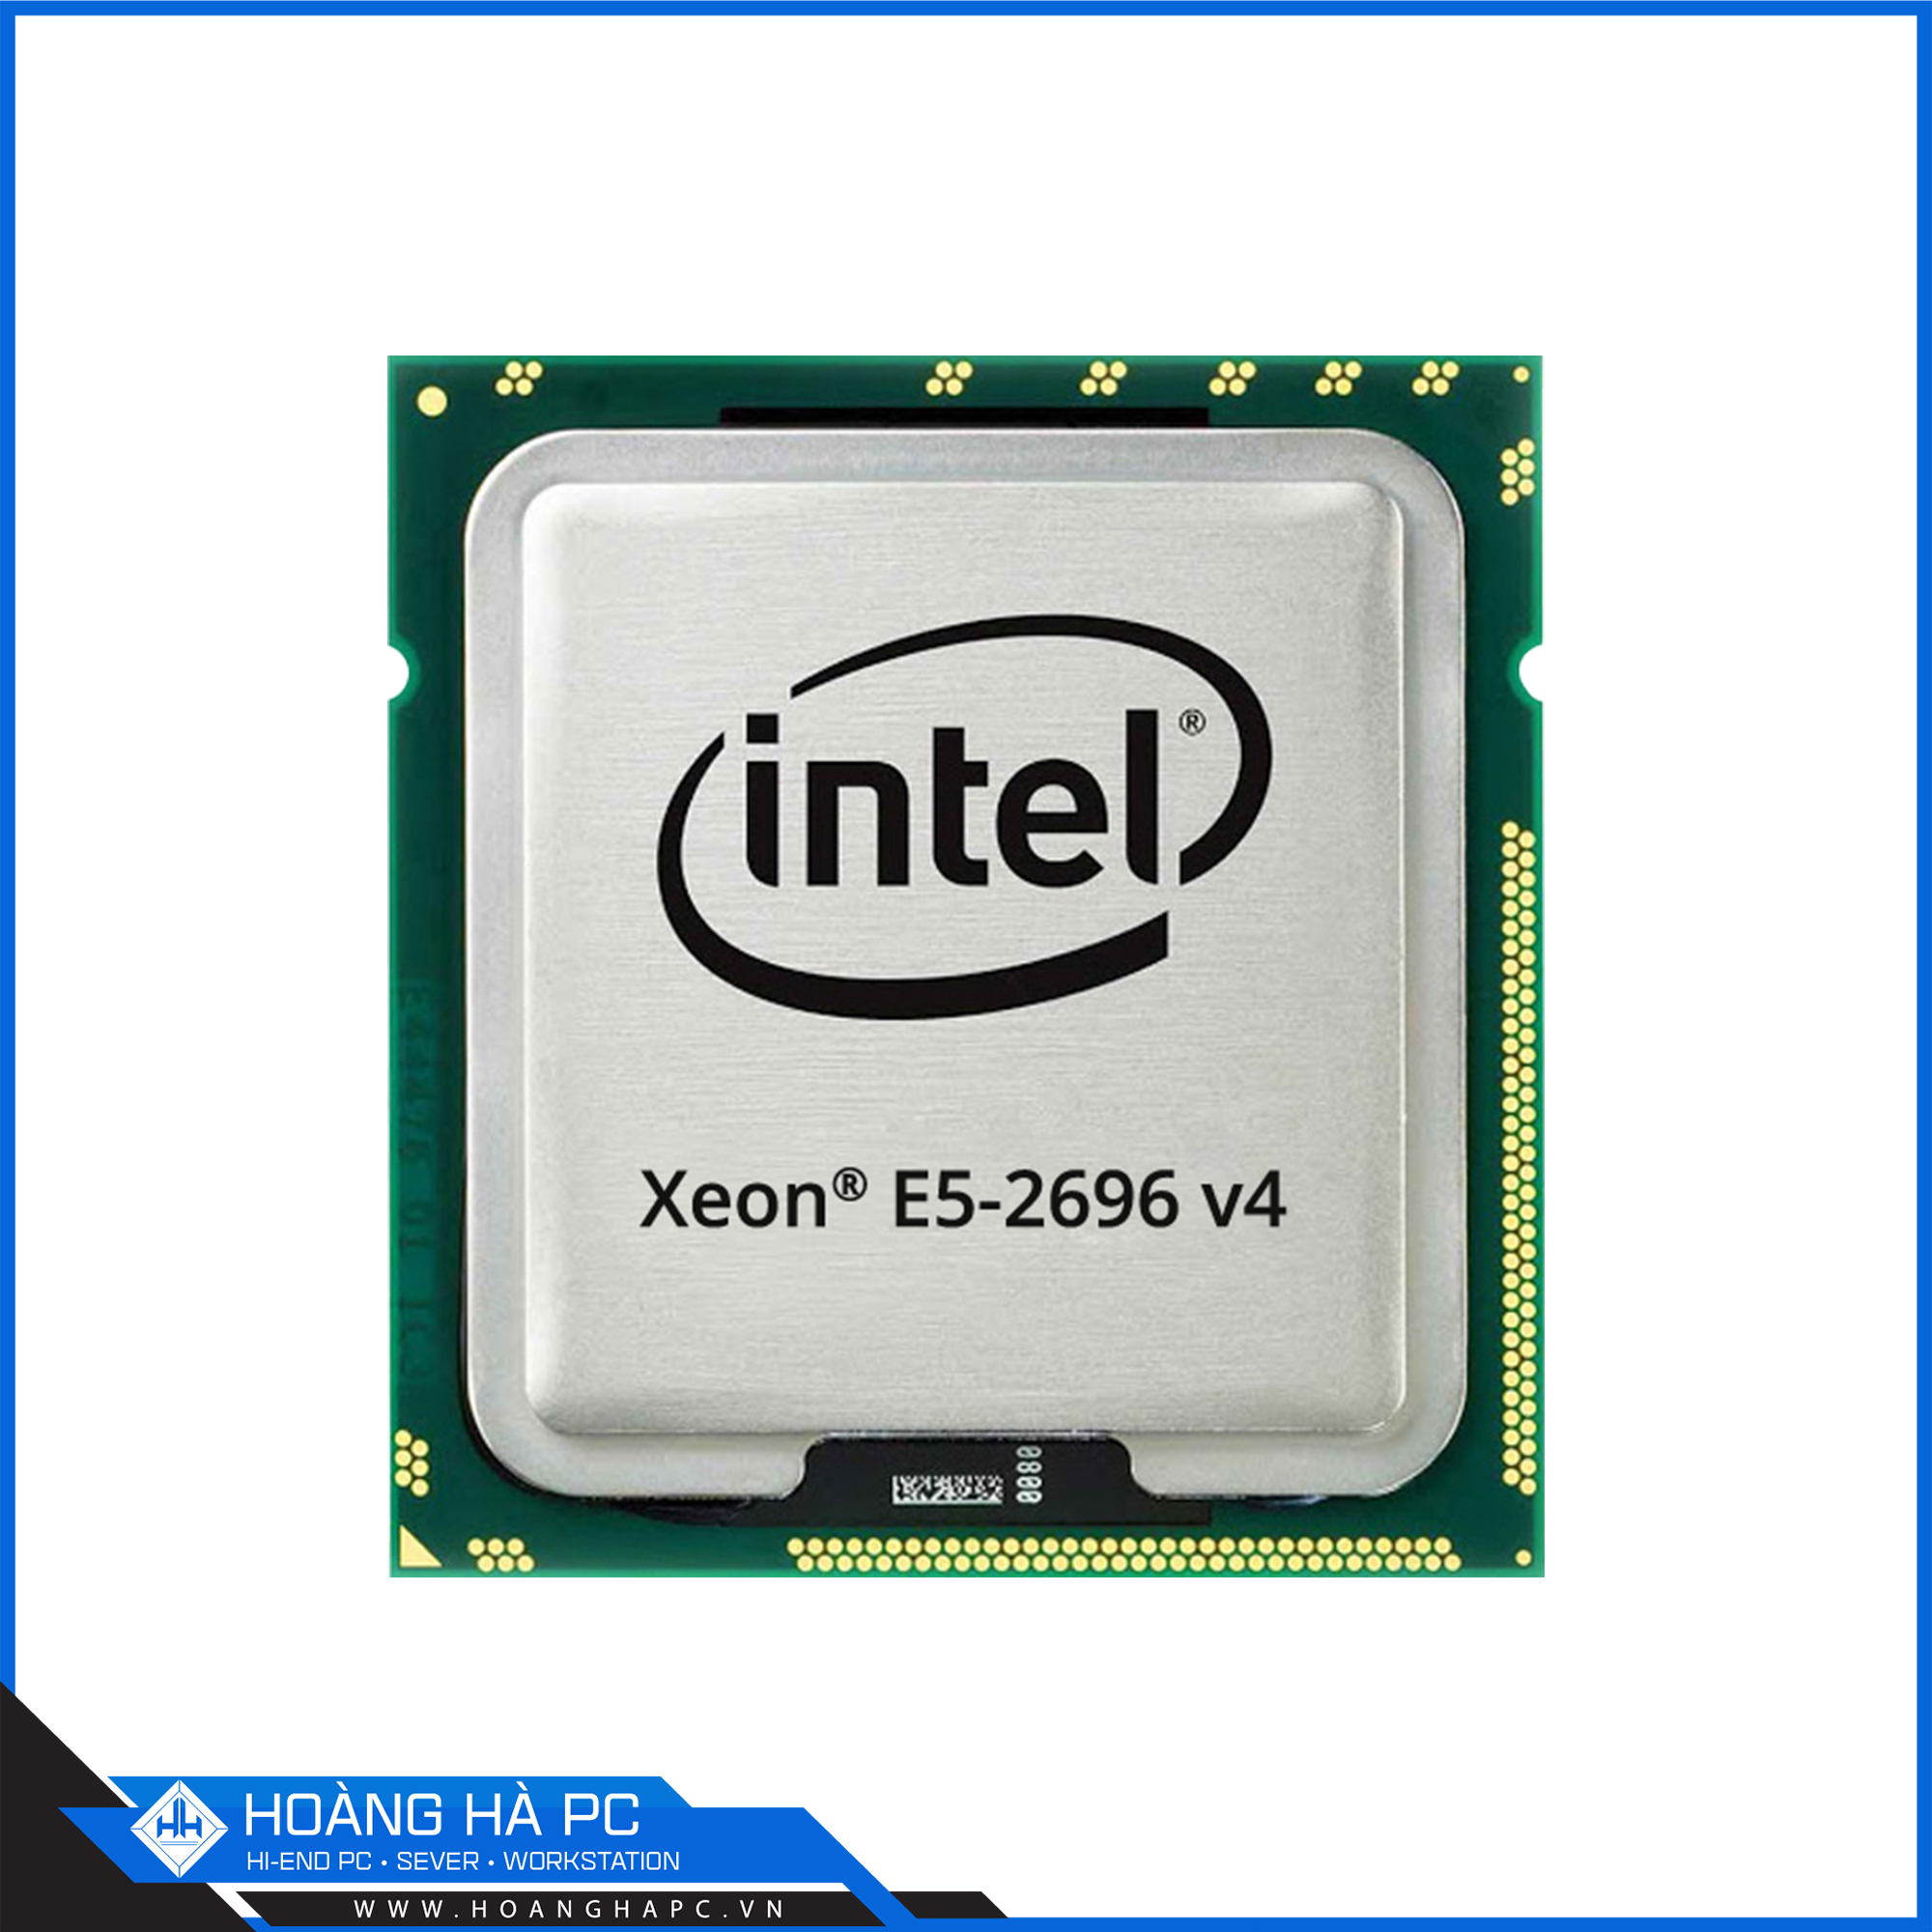 Intel Xeon E5-2696v4 (2.2GHz Turbo Up To 3.6GHz, 22 nhân 44 luồng, 55MB Cache, LGA 2011-3) 